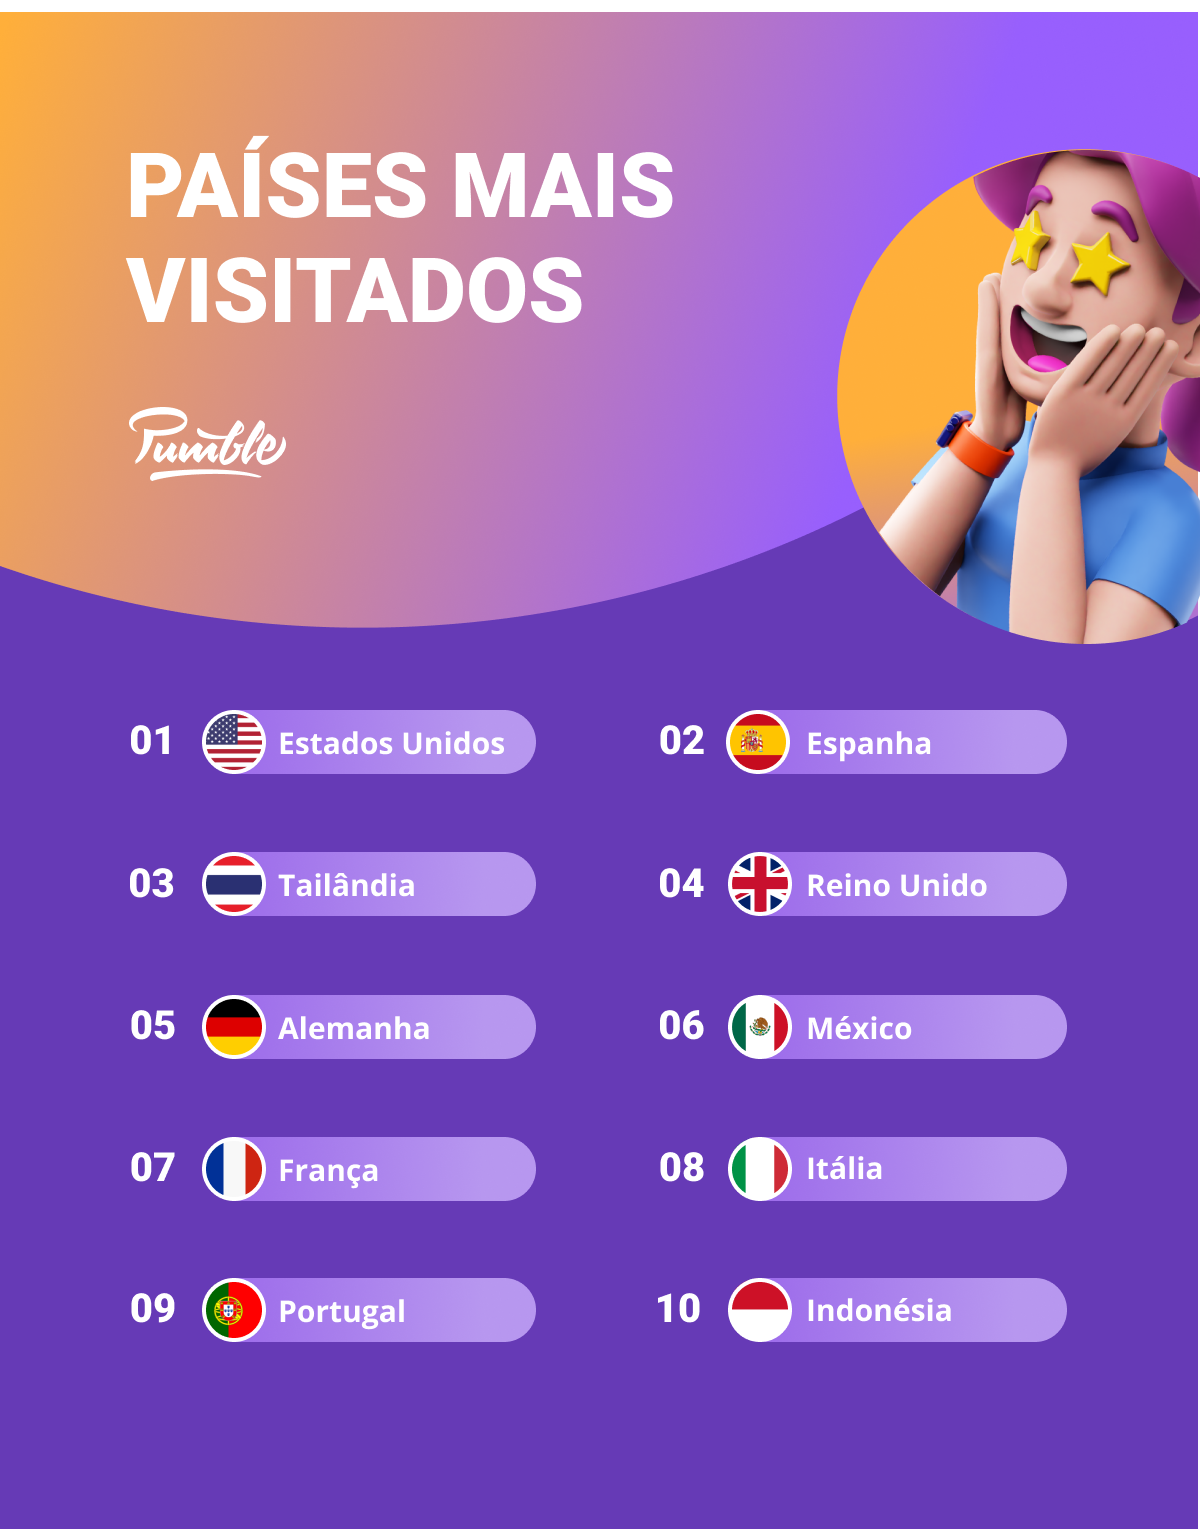 Os países mais visitados pelos nômades digitais